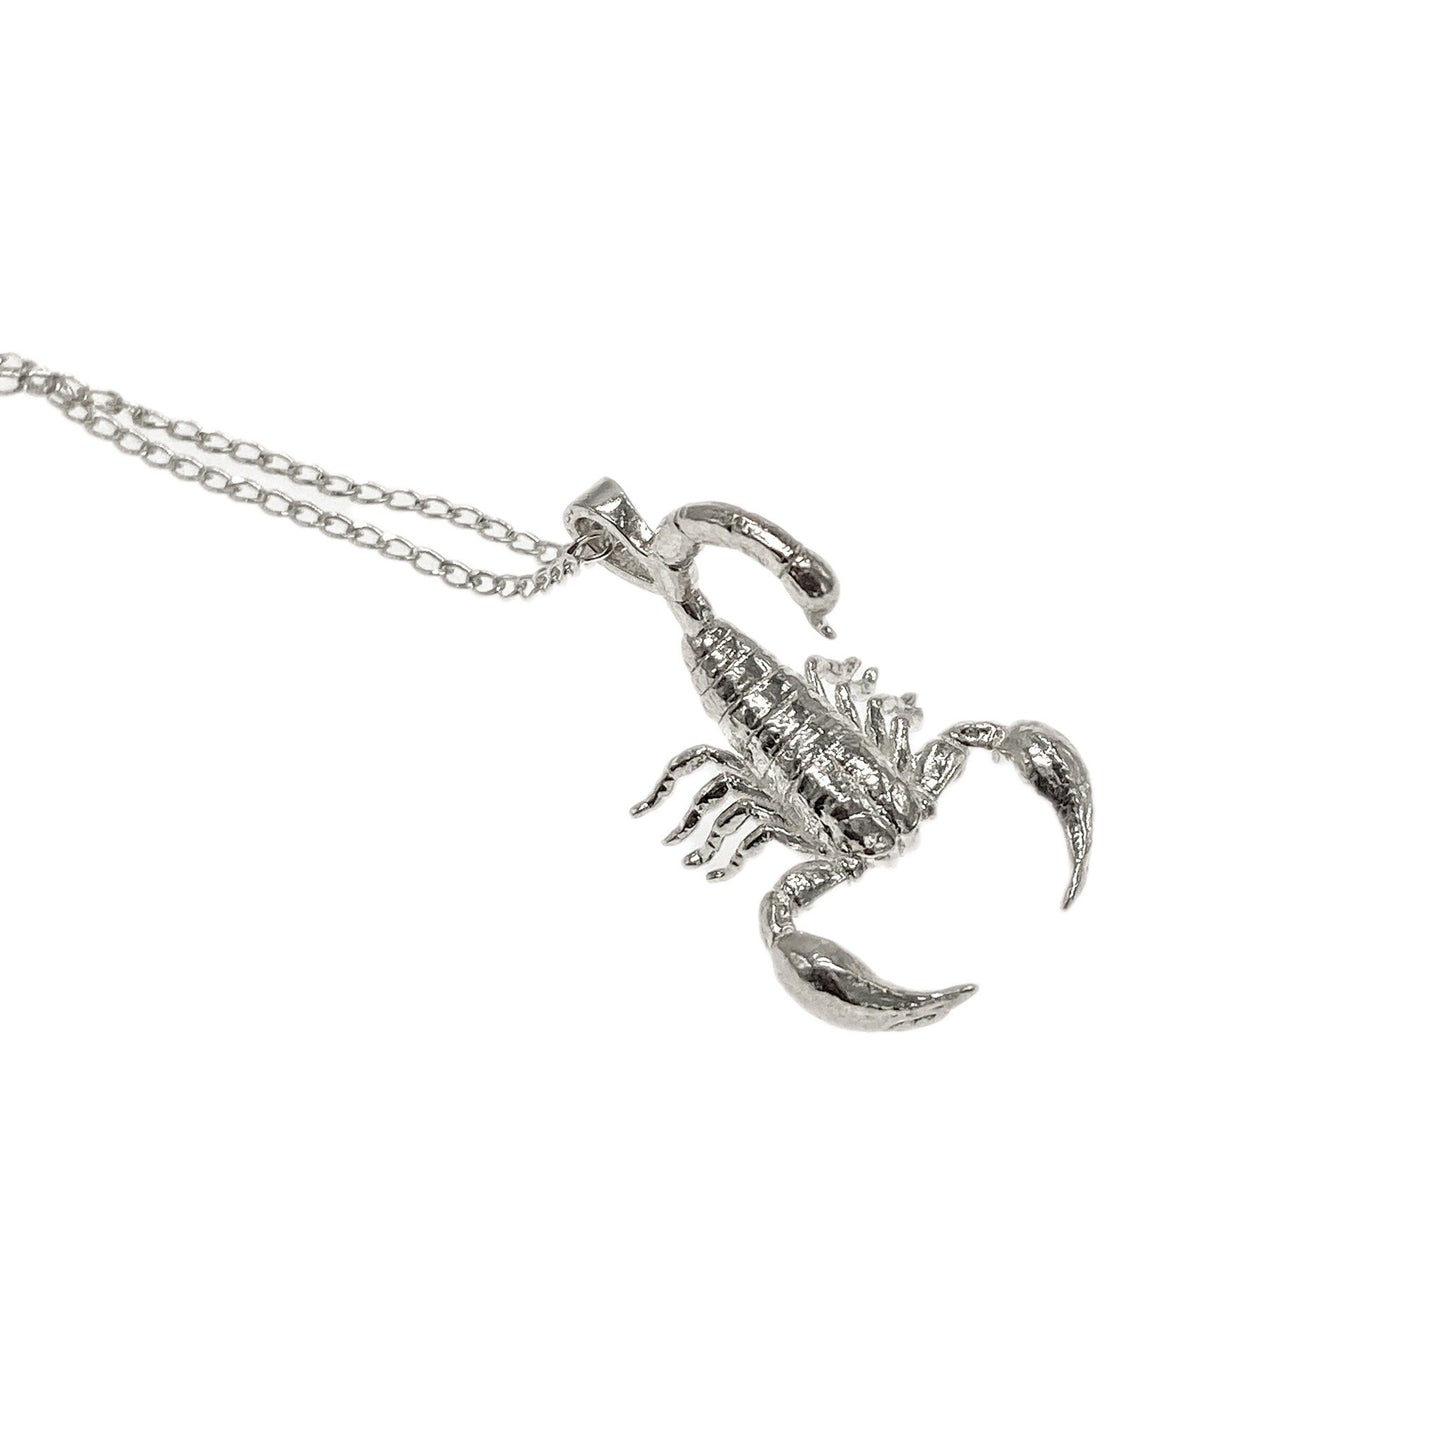 Amelia Ray – Jewelry Necklace Scorpion